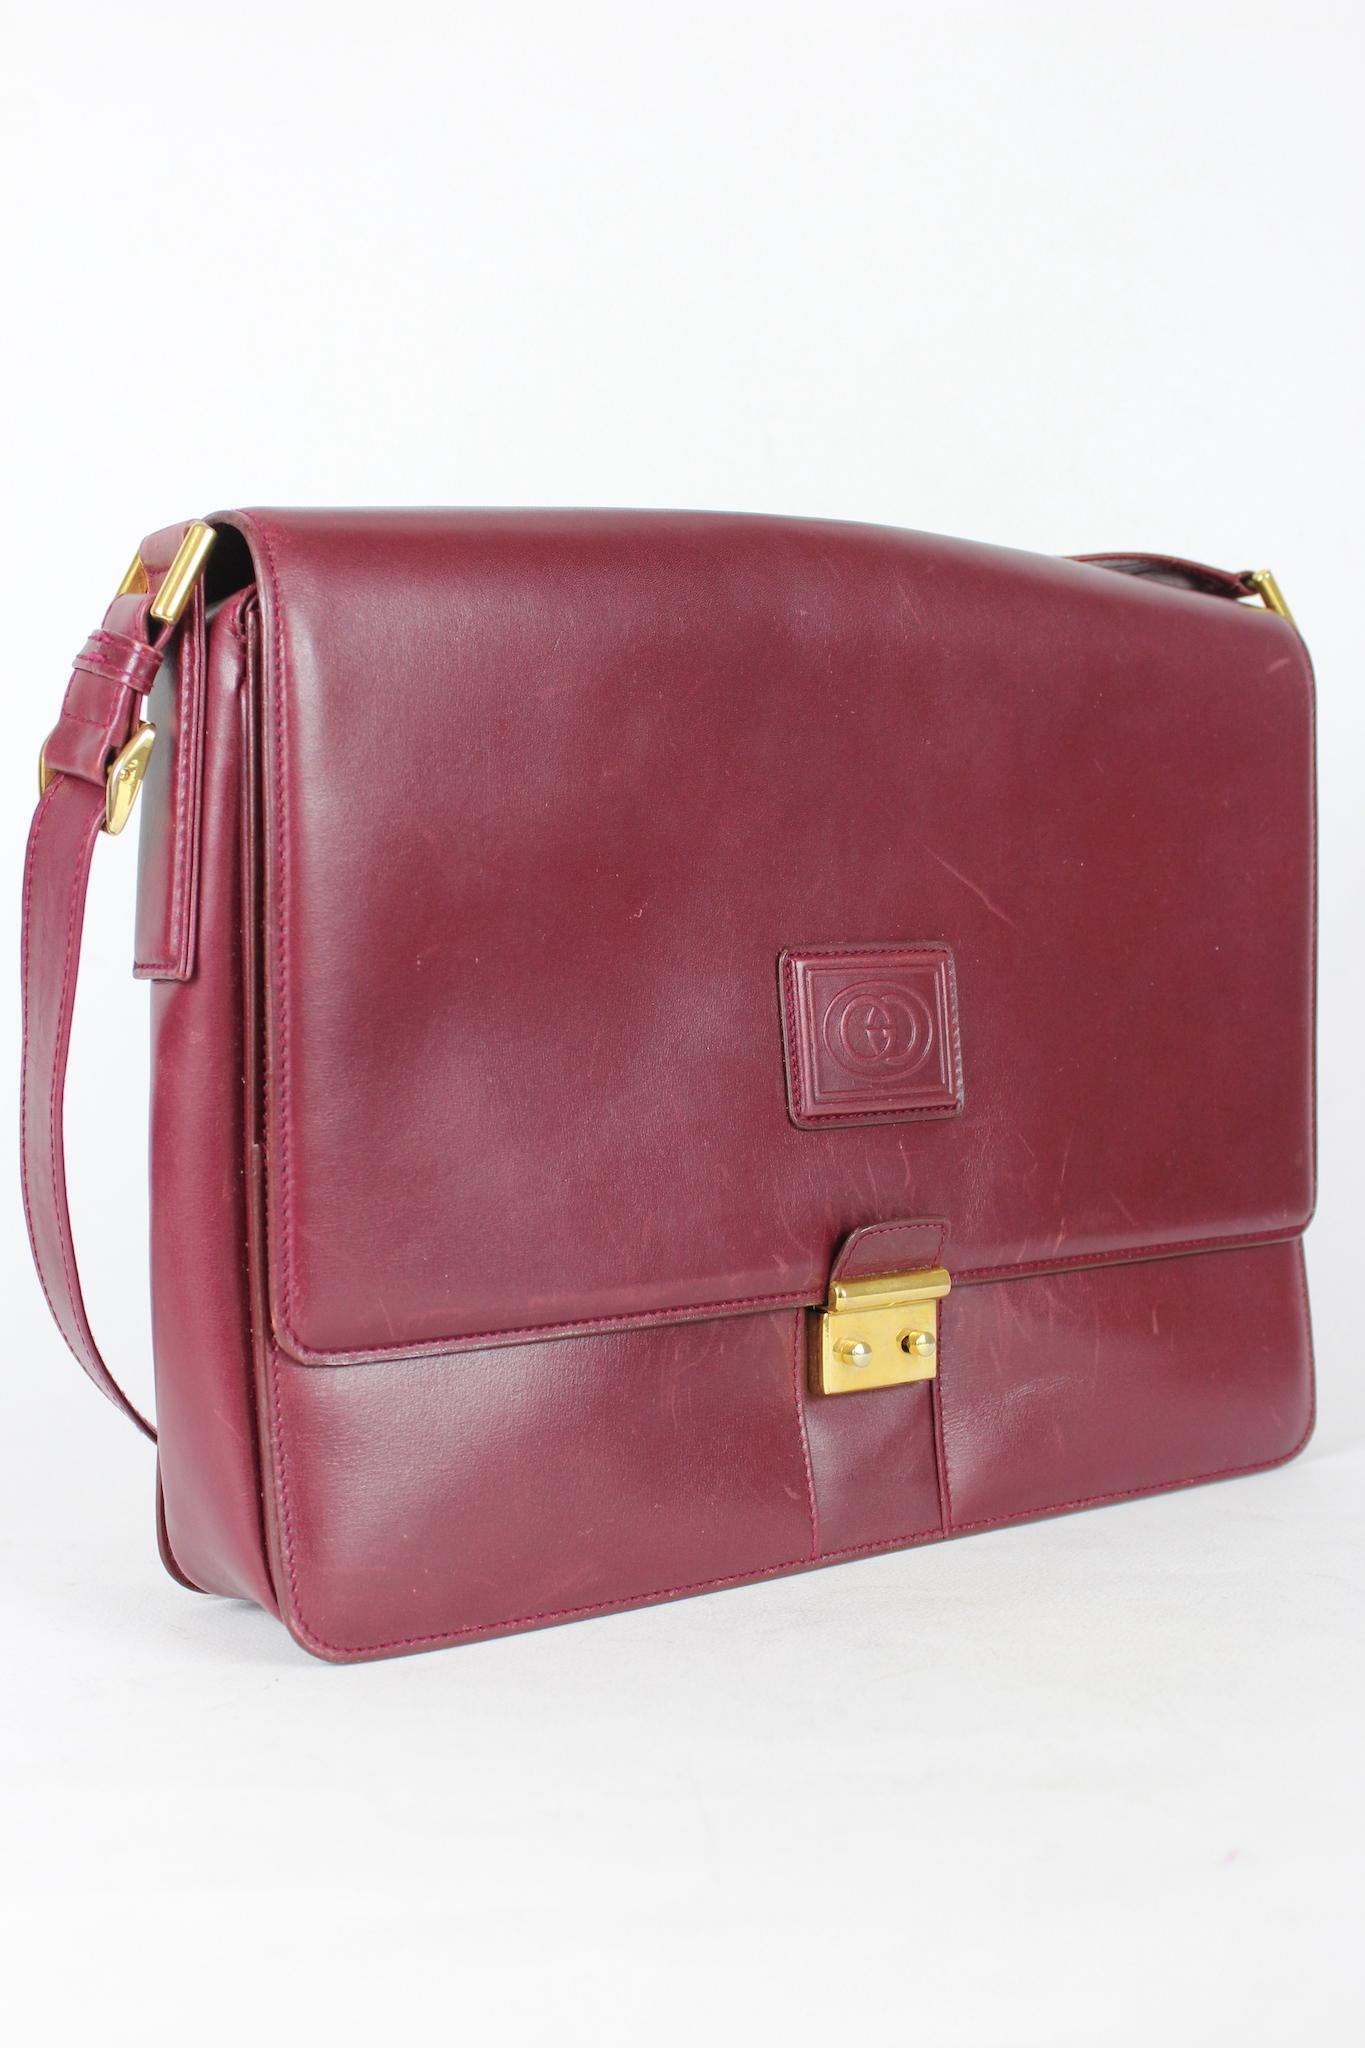 Brown Gucci Messenger Burgundy Leather Shoulder Bag Vintage 1980s